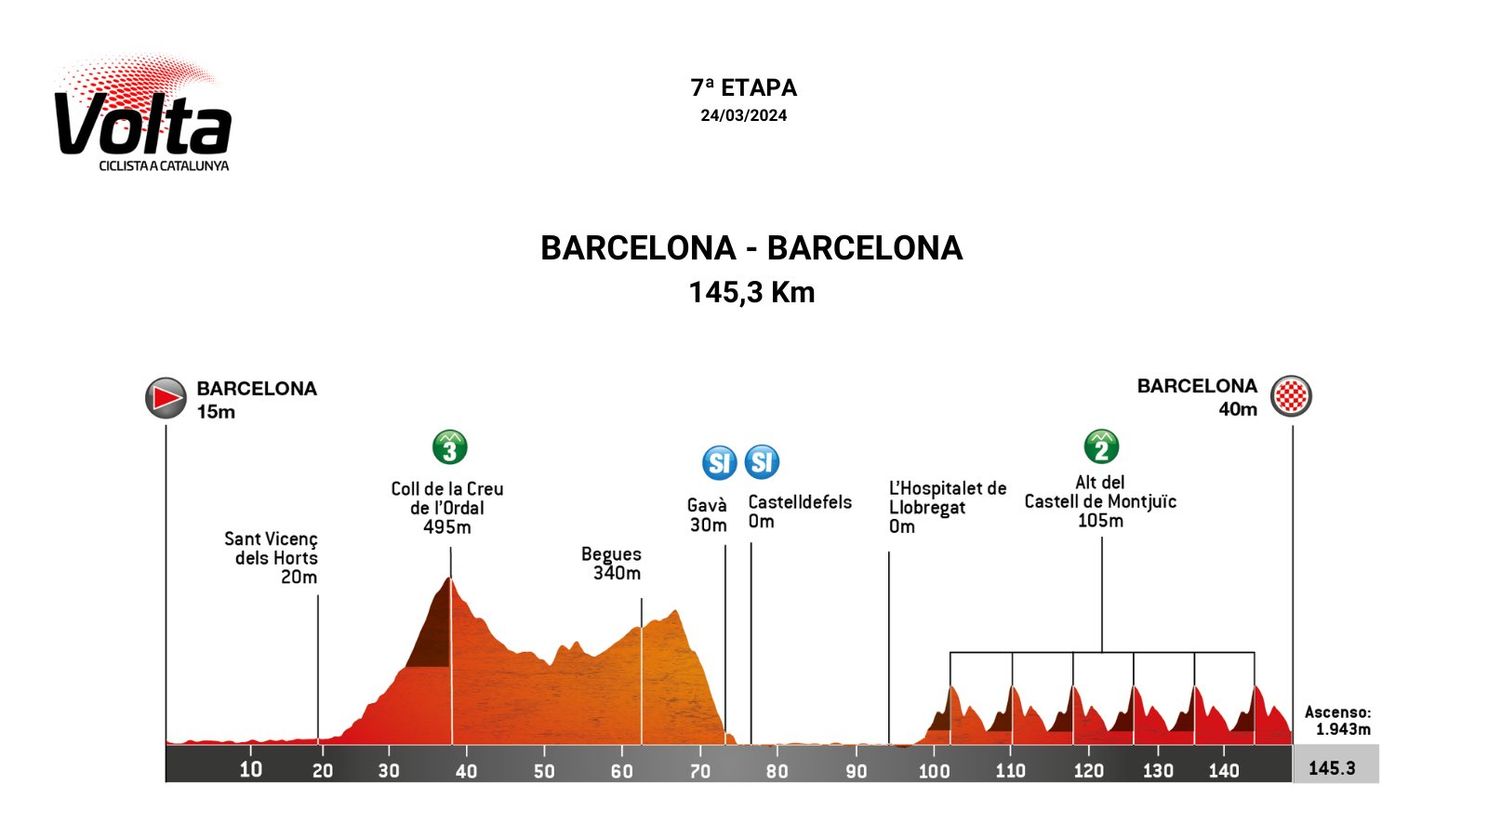 PREVIA | Etapa 7 Volta a Catalunya 2024 - Mikel Landa y Egan Bernal buscarán defender el podio en el paseo triunfal de Tadej Pogacar por las calles de Montjuic